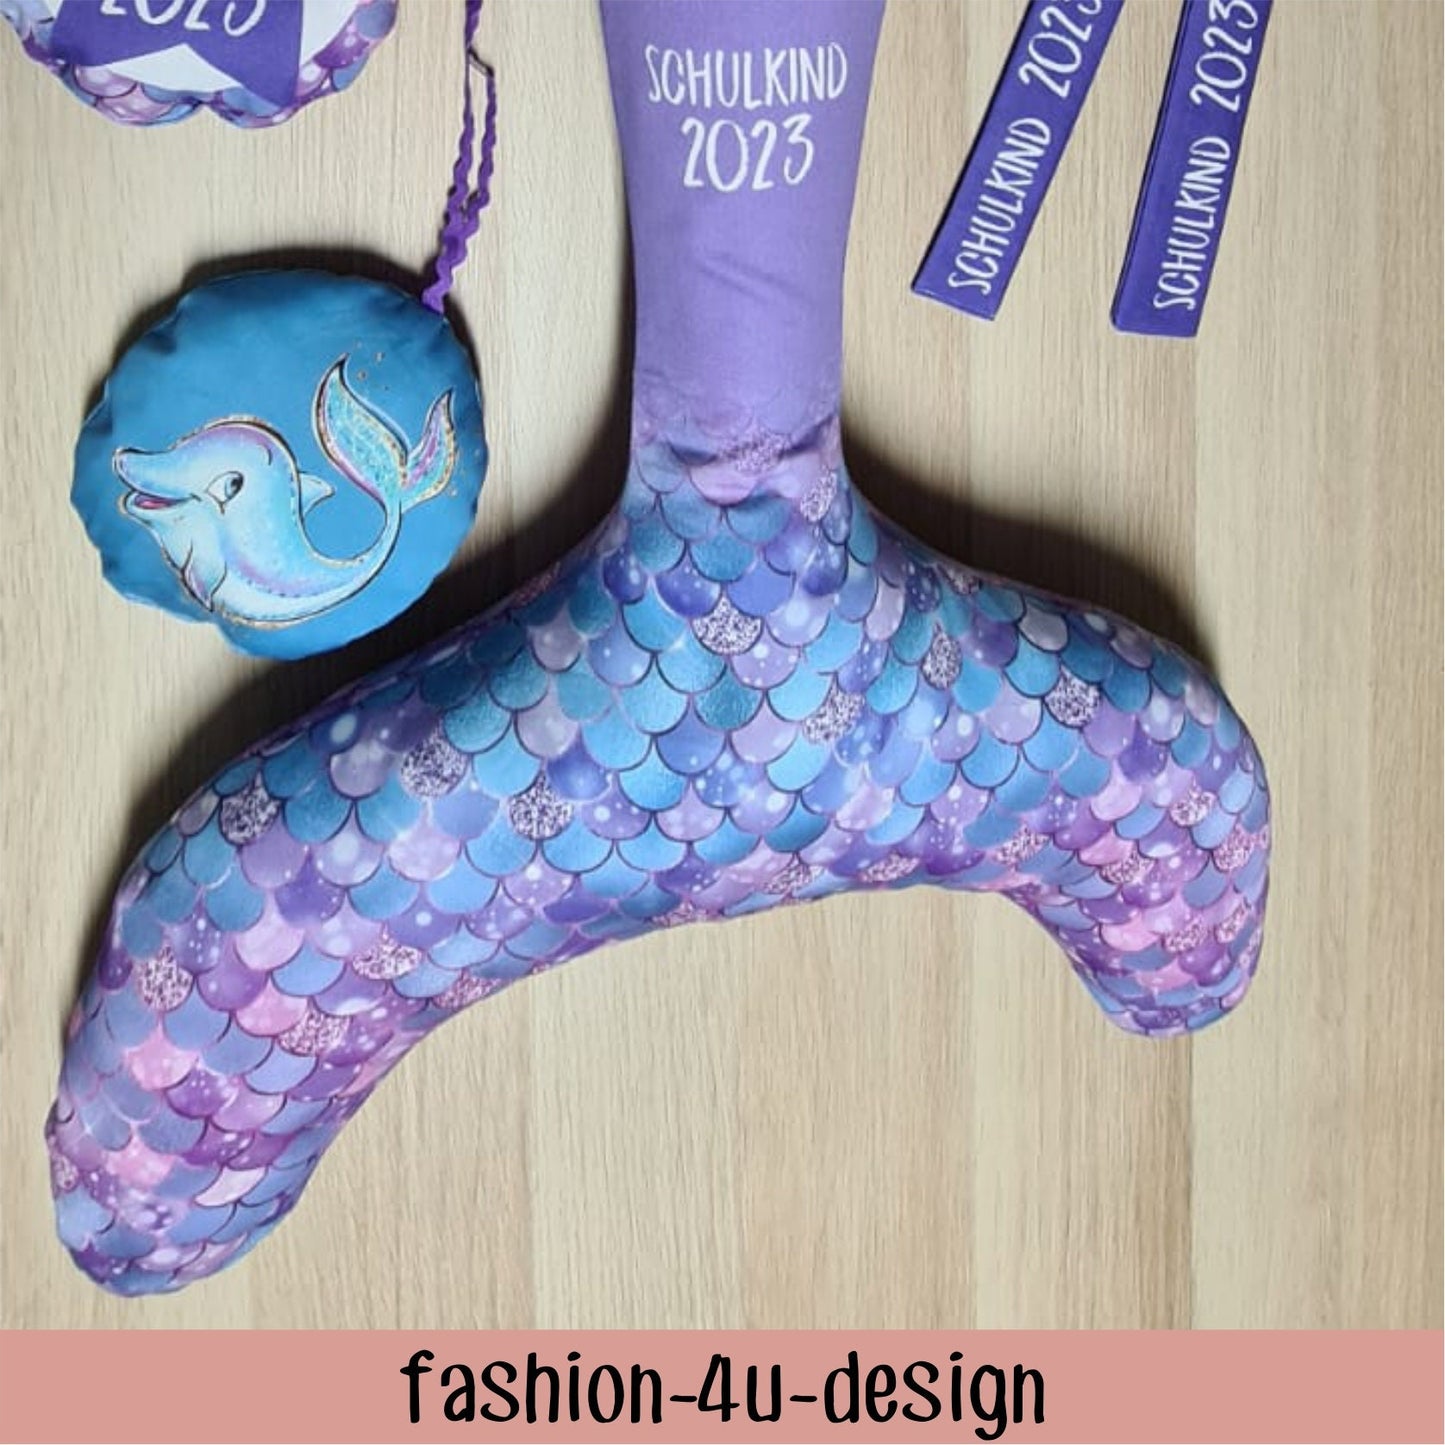 A005 Schultüte/Zuckertüte: Meerjungfrau mit Flosse - Baumwoll-Panel zum selber nähen - DIY Näh-Set 70 cm - mit Namen & Schulkind 2024